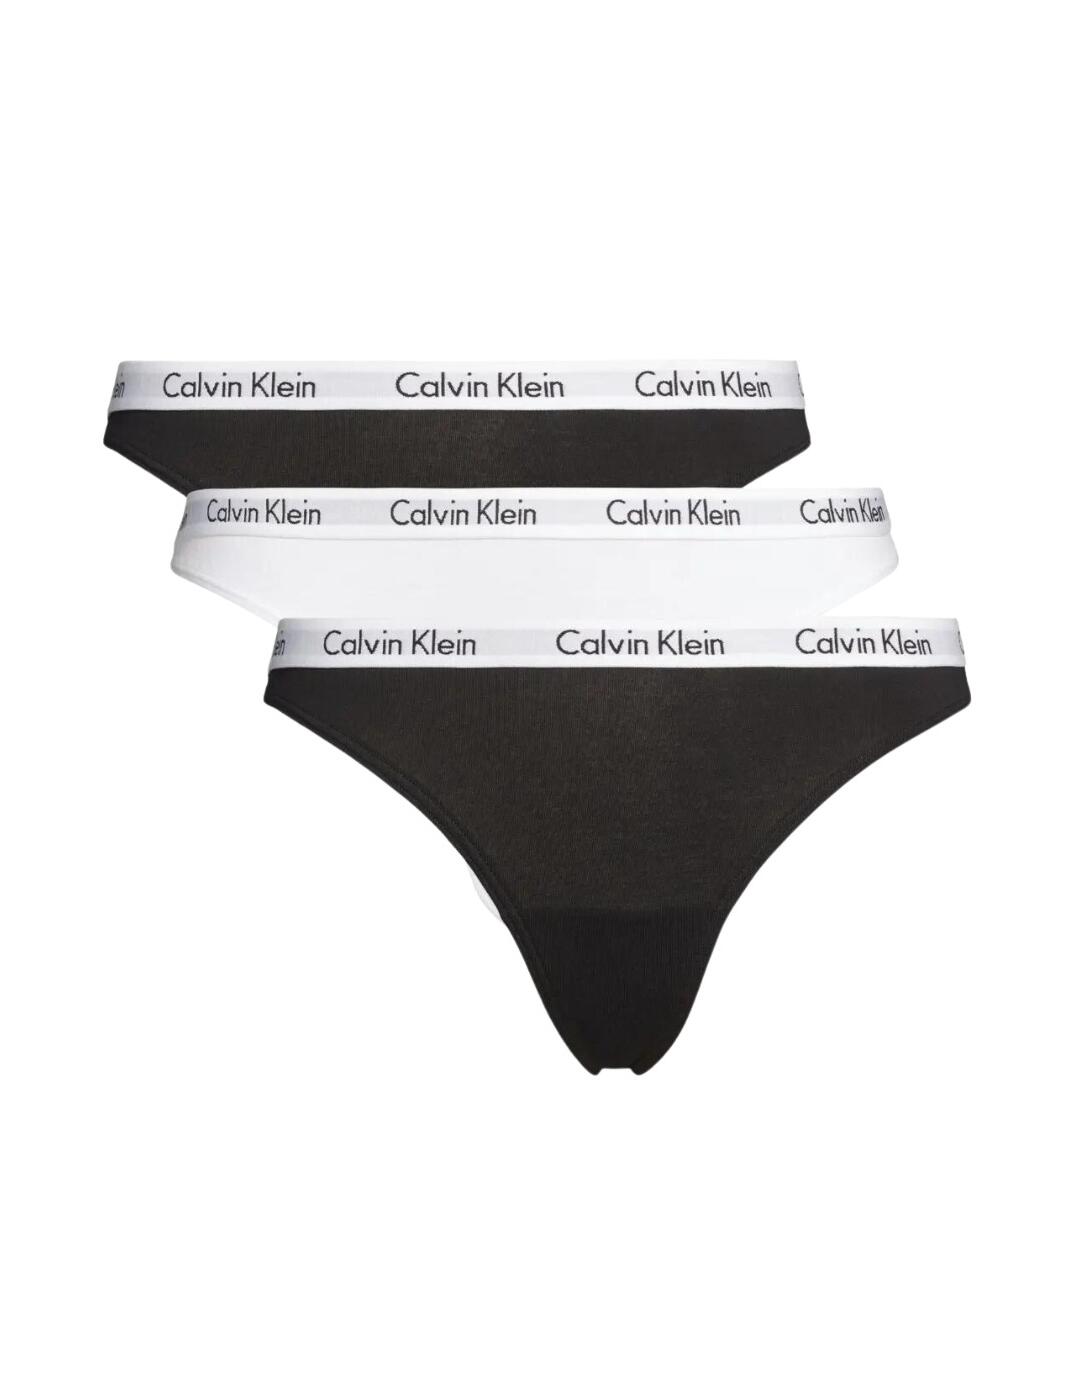 Calvin Klein Carousel Logo Cotton 3-pack Thong in Black